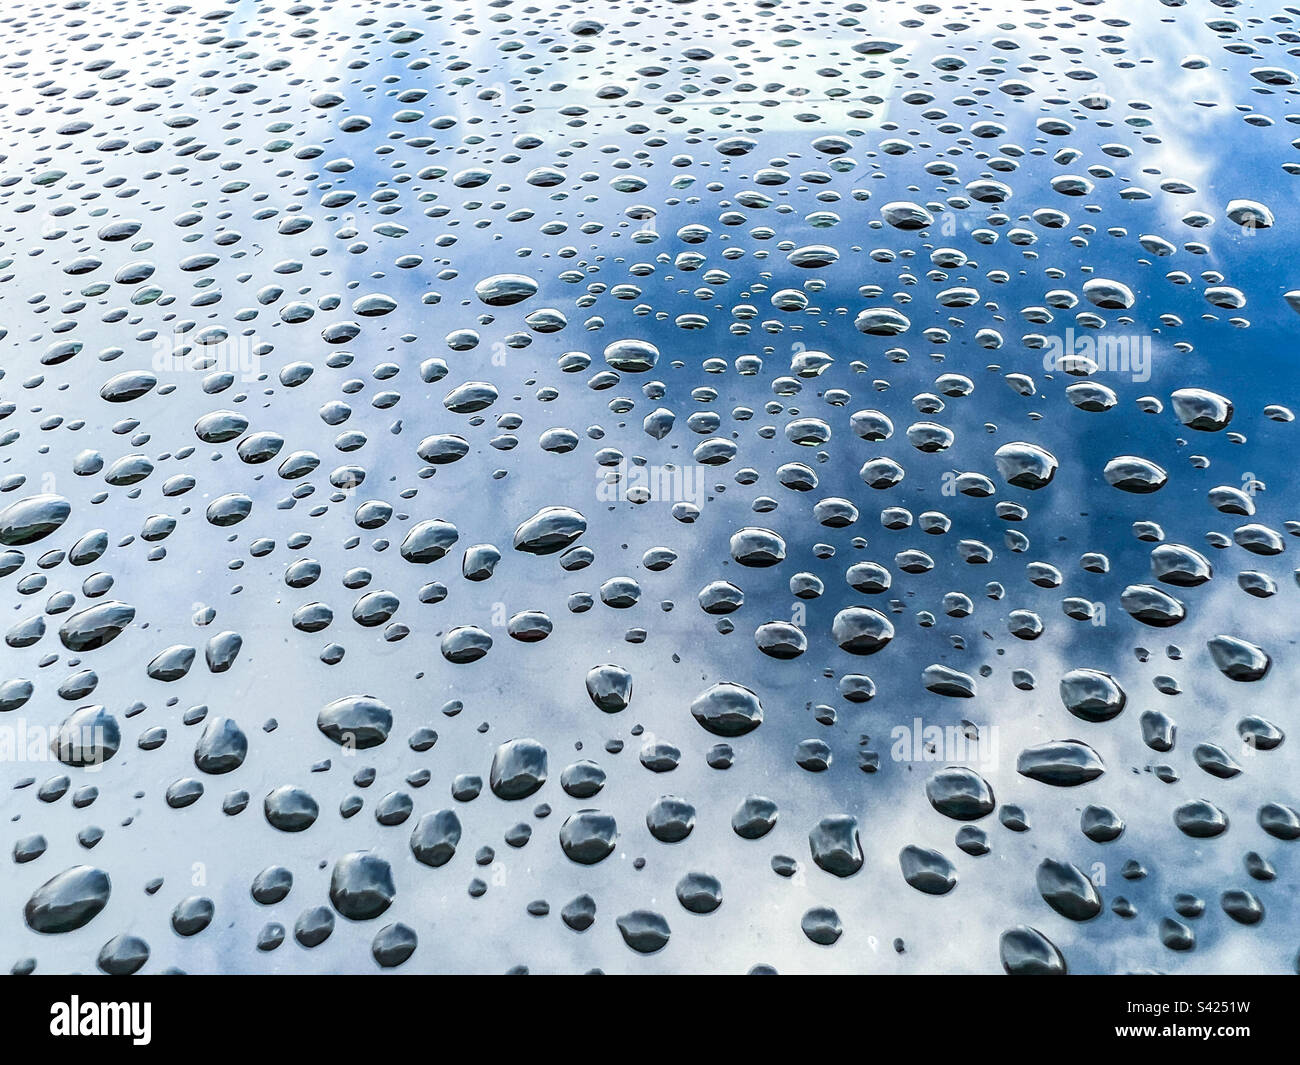 Grosses gouttes de pluie sur une surface métallique Banque D'Images